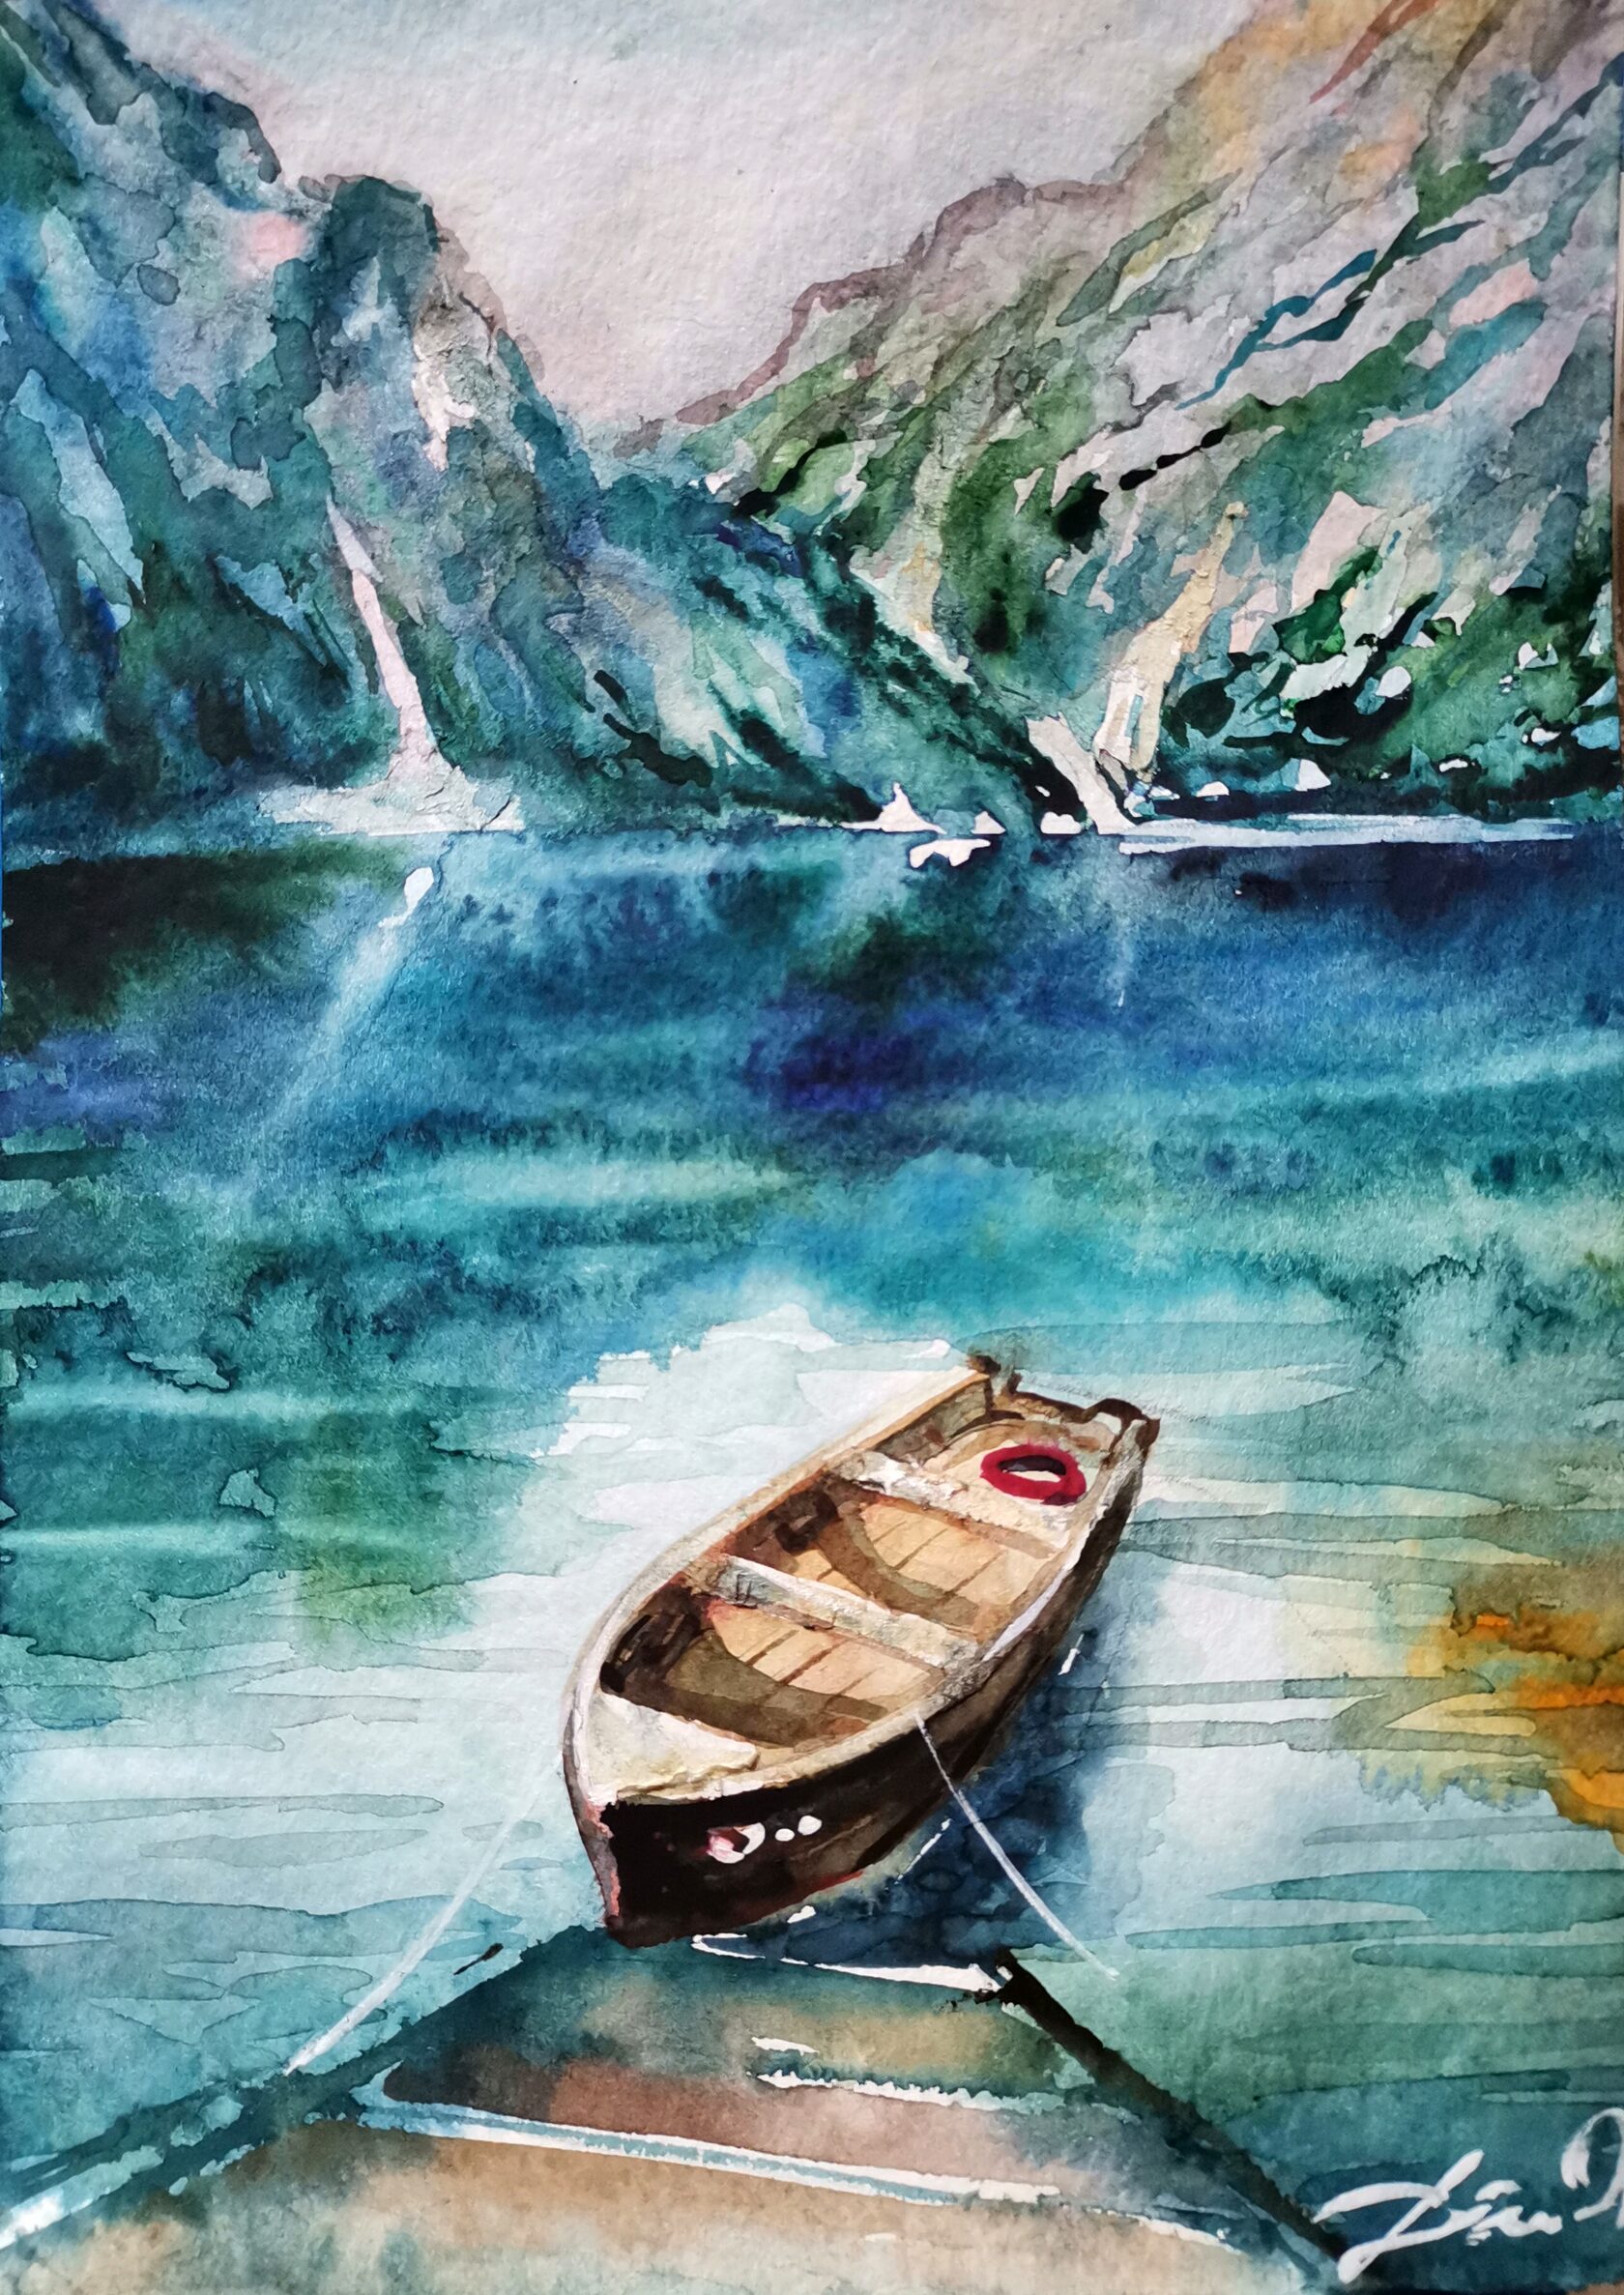 Видеоурок - рисуем пейзаж: горы, озеро, лодка, природа